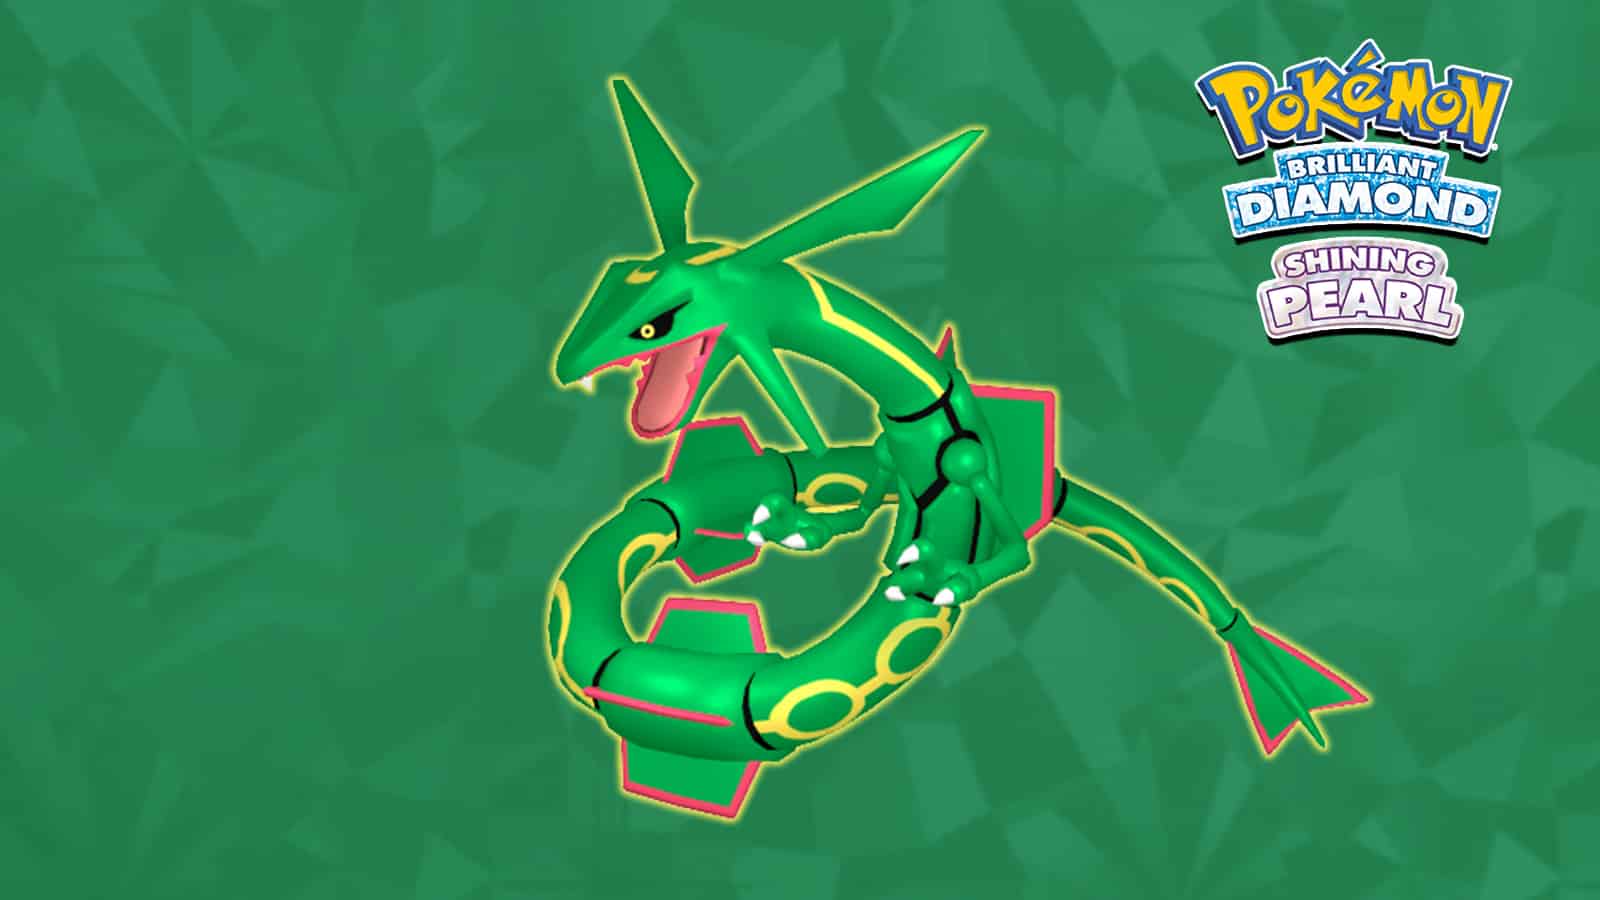 Shiny Legendary Rayquaza / Pokémon Brilliant Diamond and